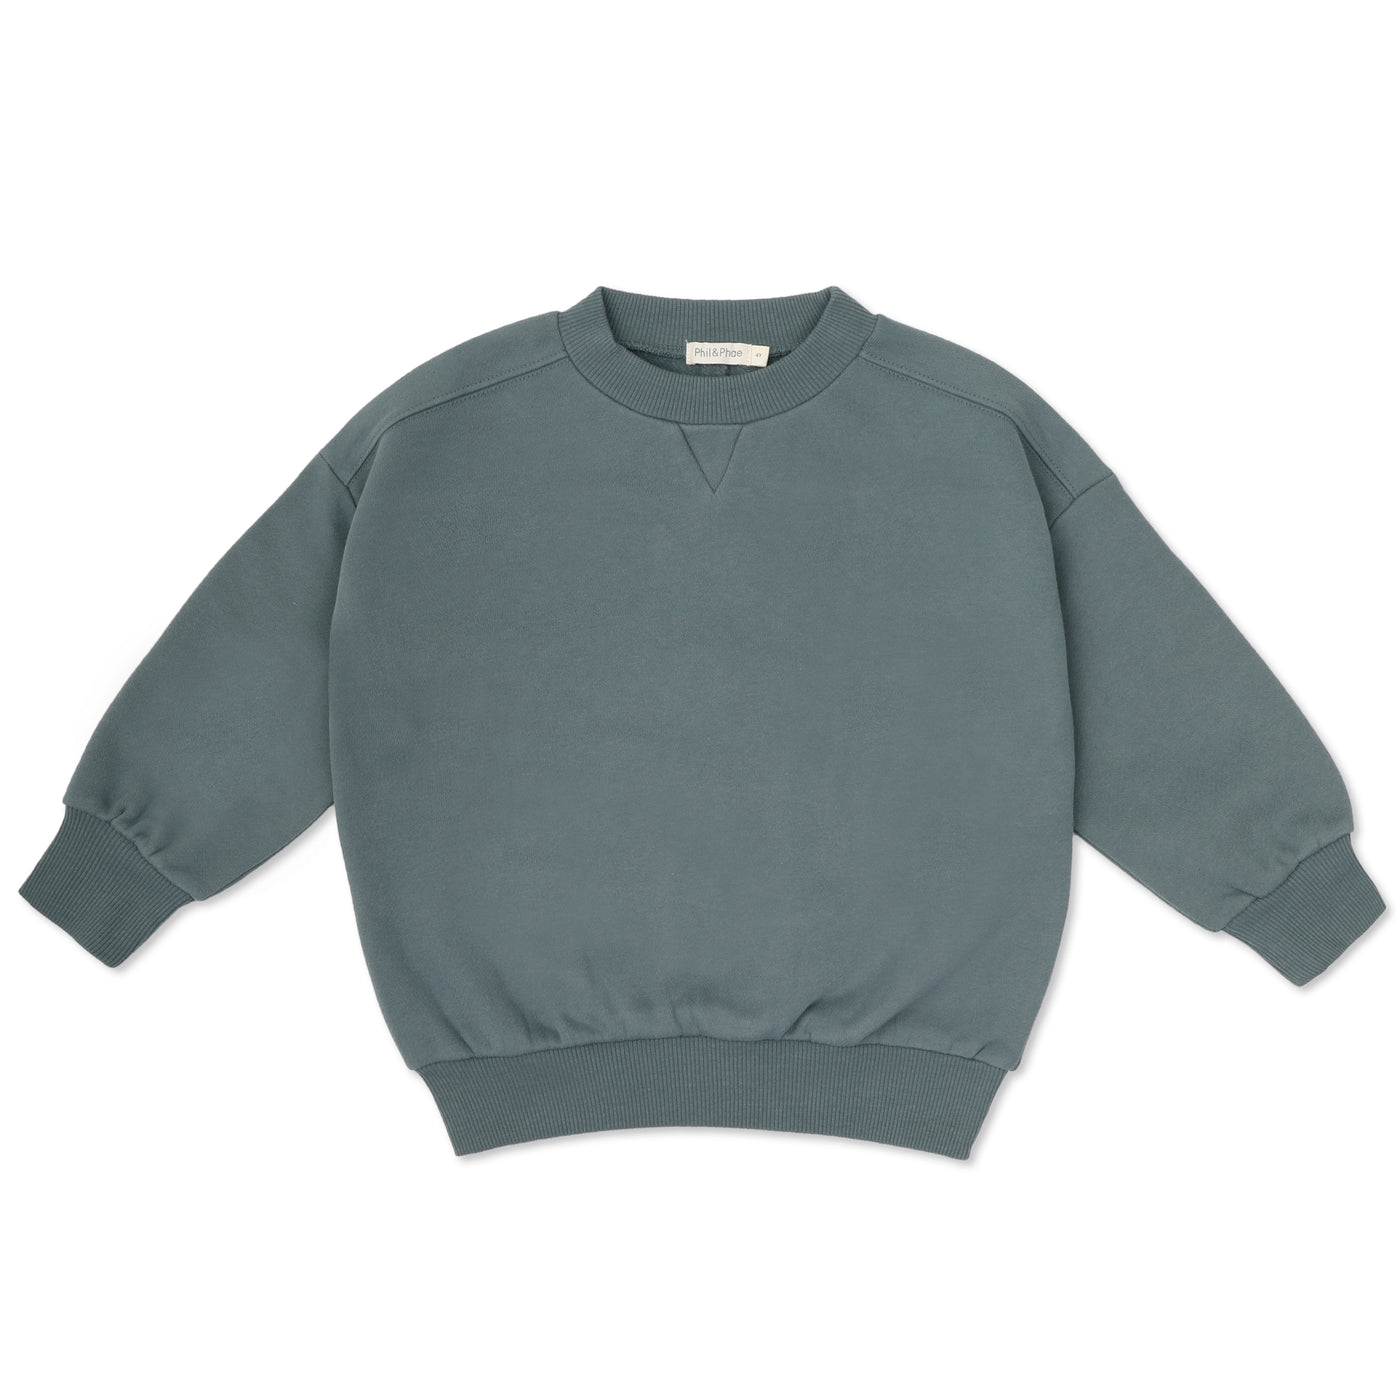 Chunky Sweater in verschiedenen Farben